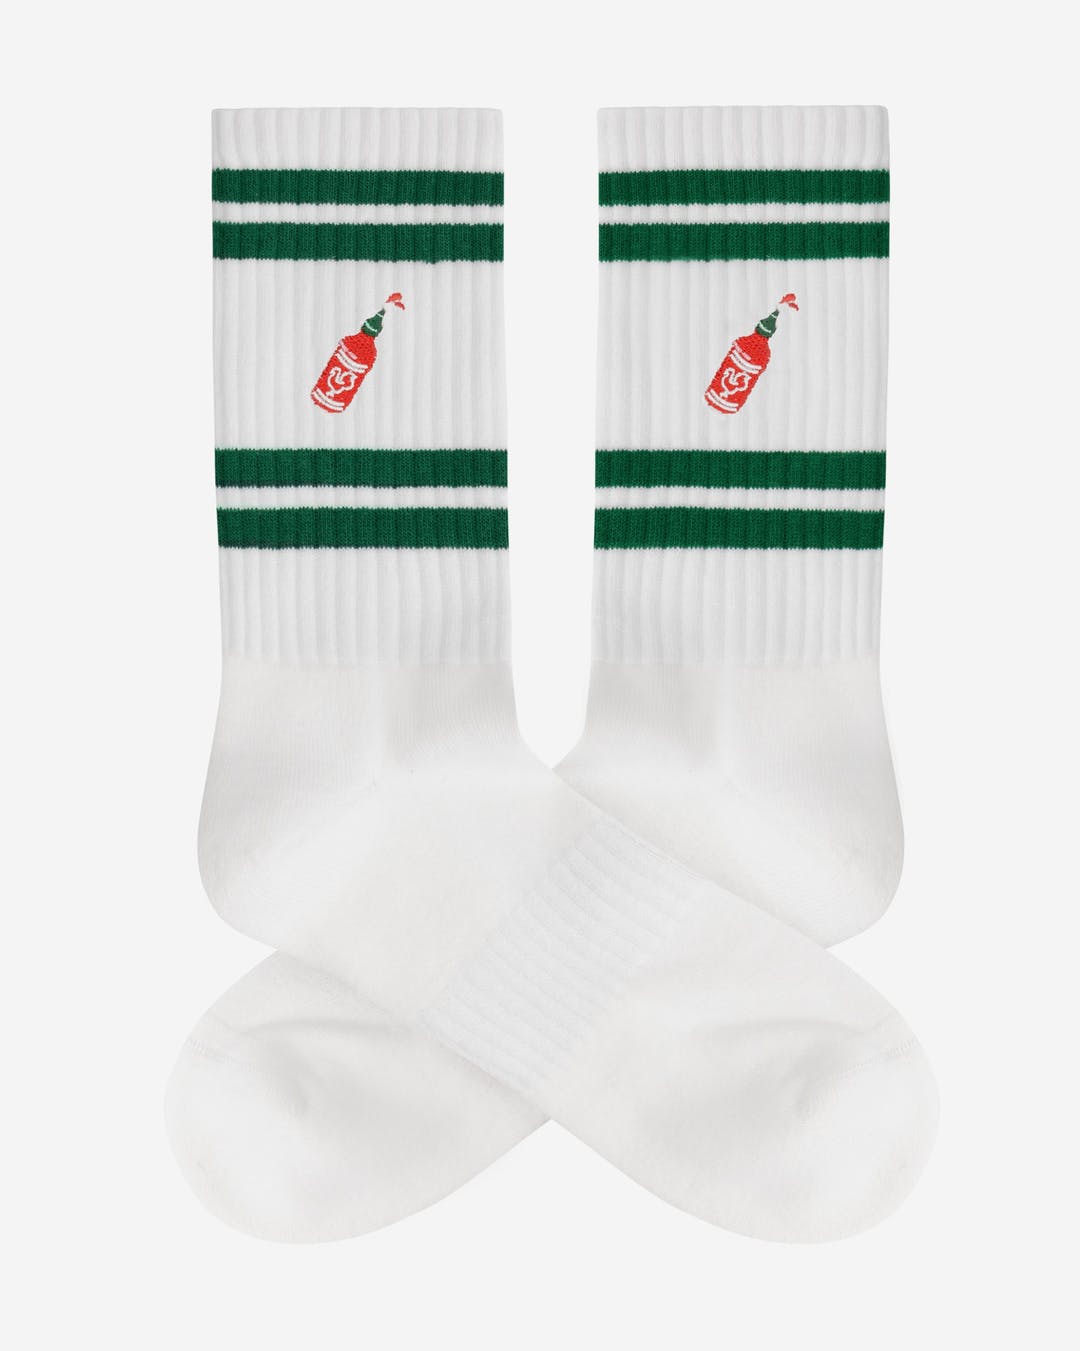 A-dam – Sport Socks